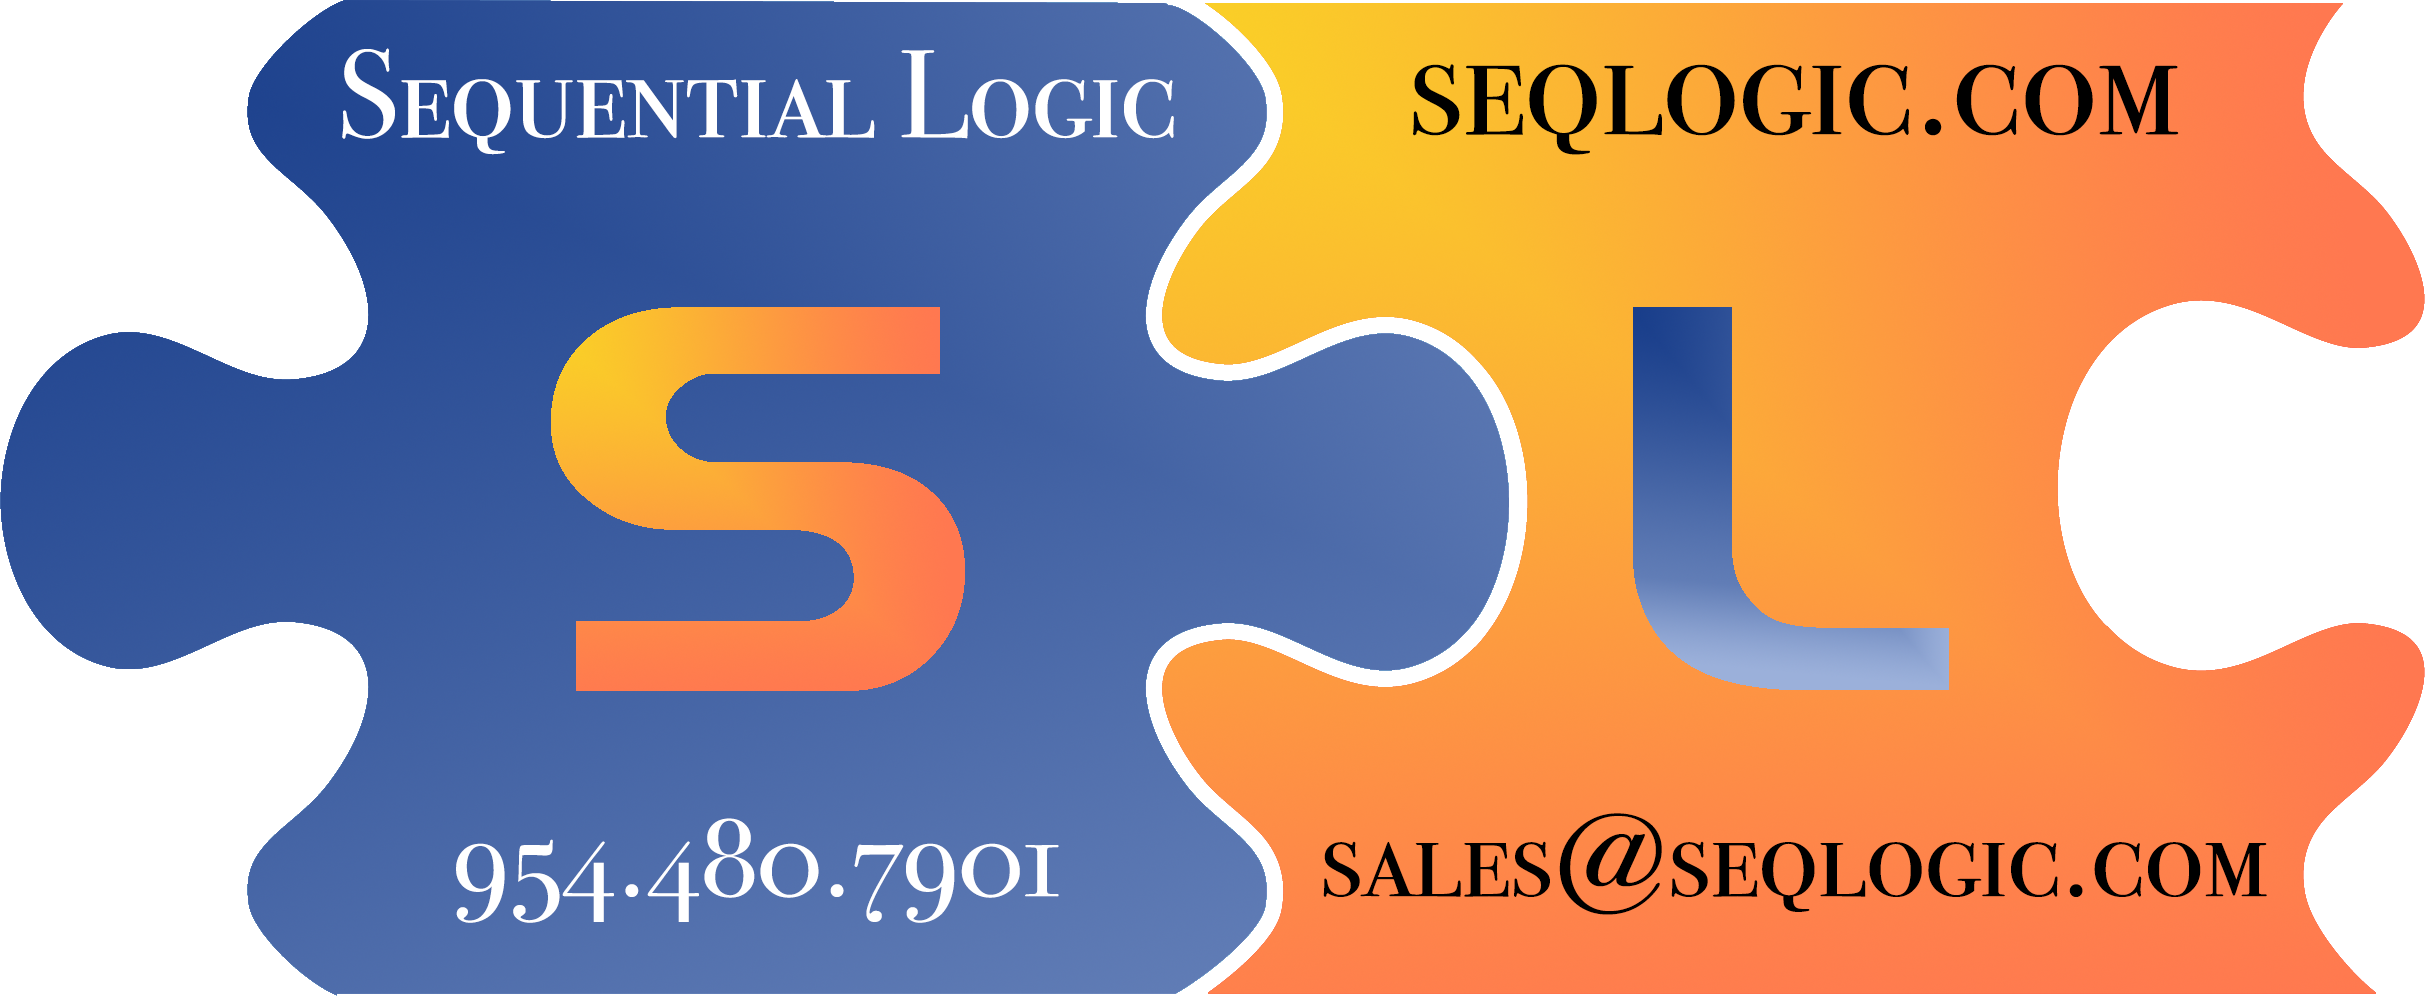 Sequential Logic LLC